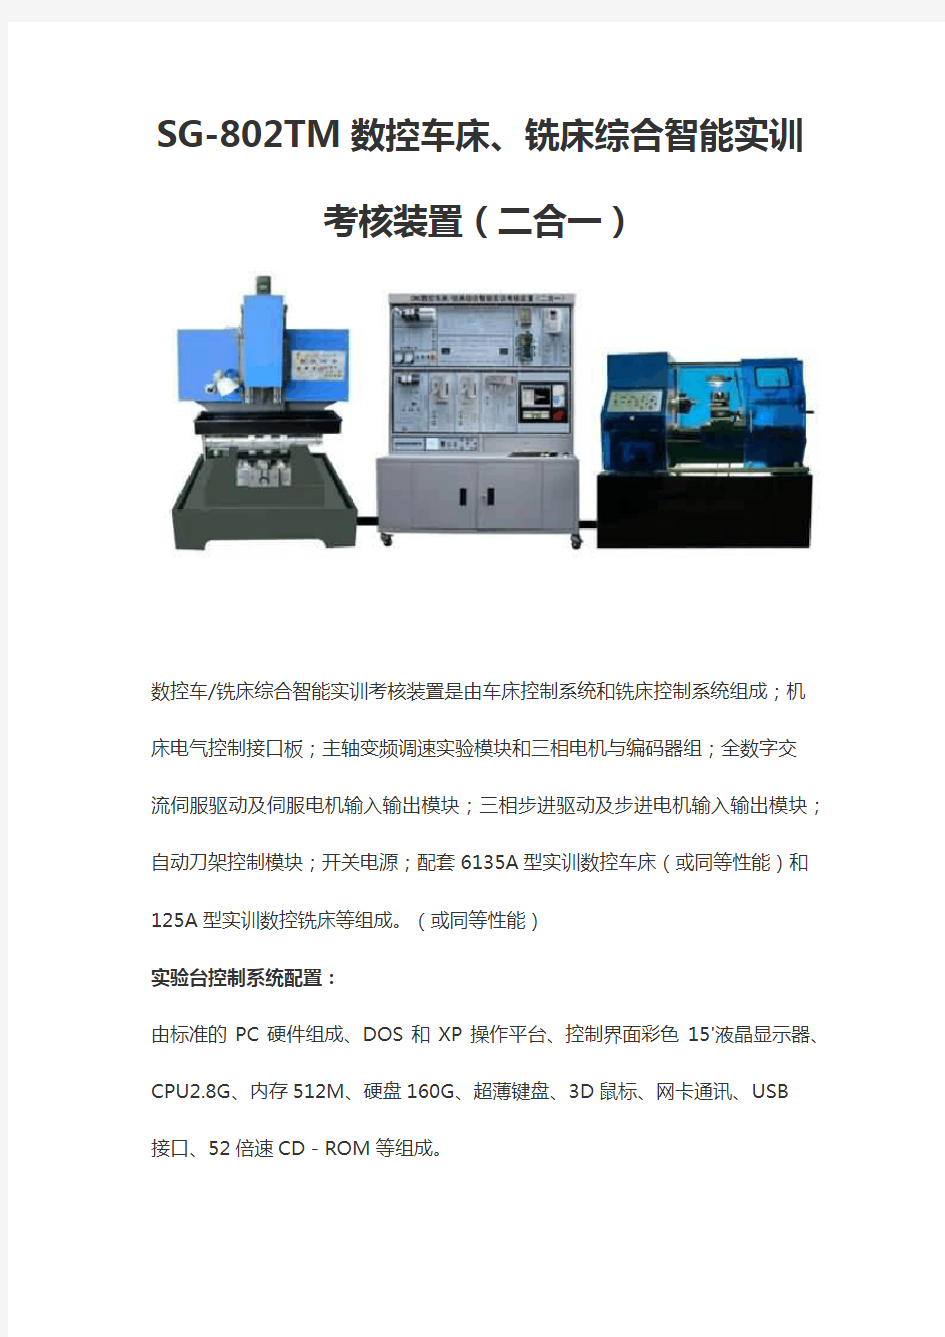 SG-802TM数控车床、铣床综合智能实训考核装置(二合一)